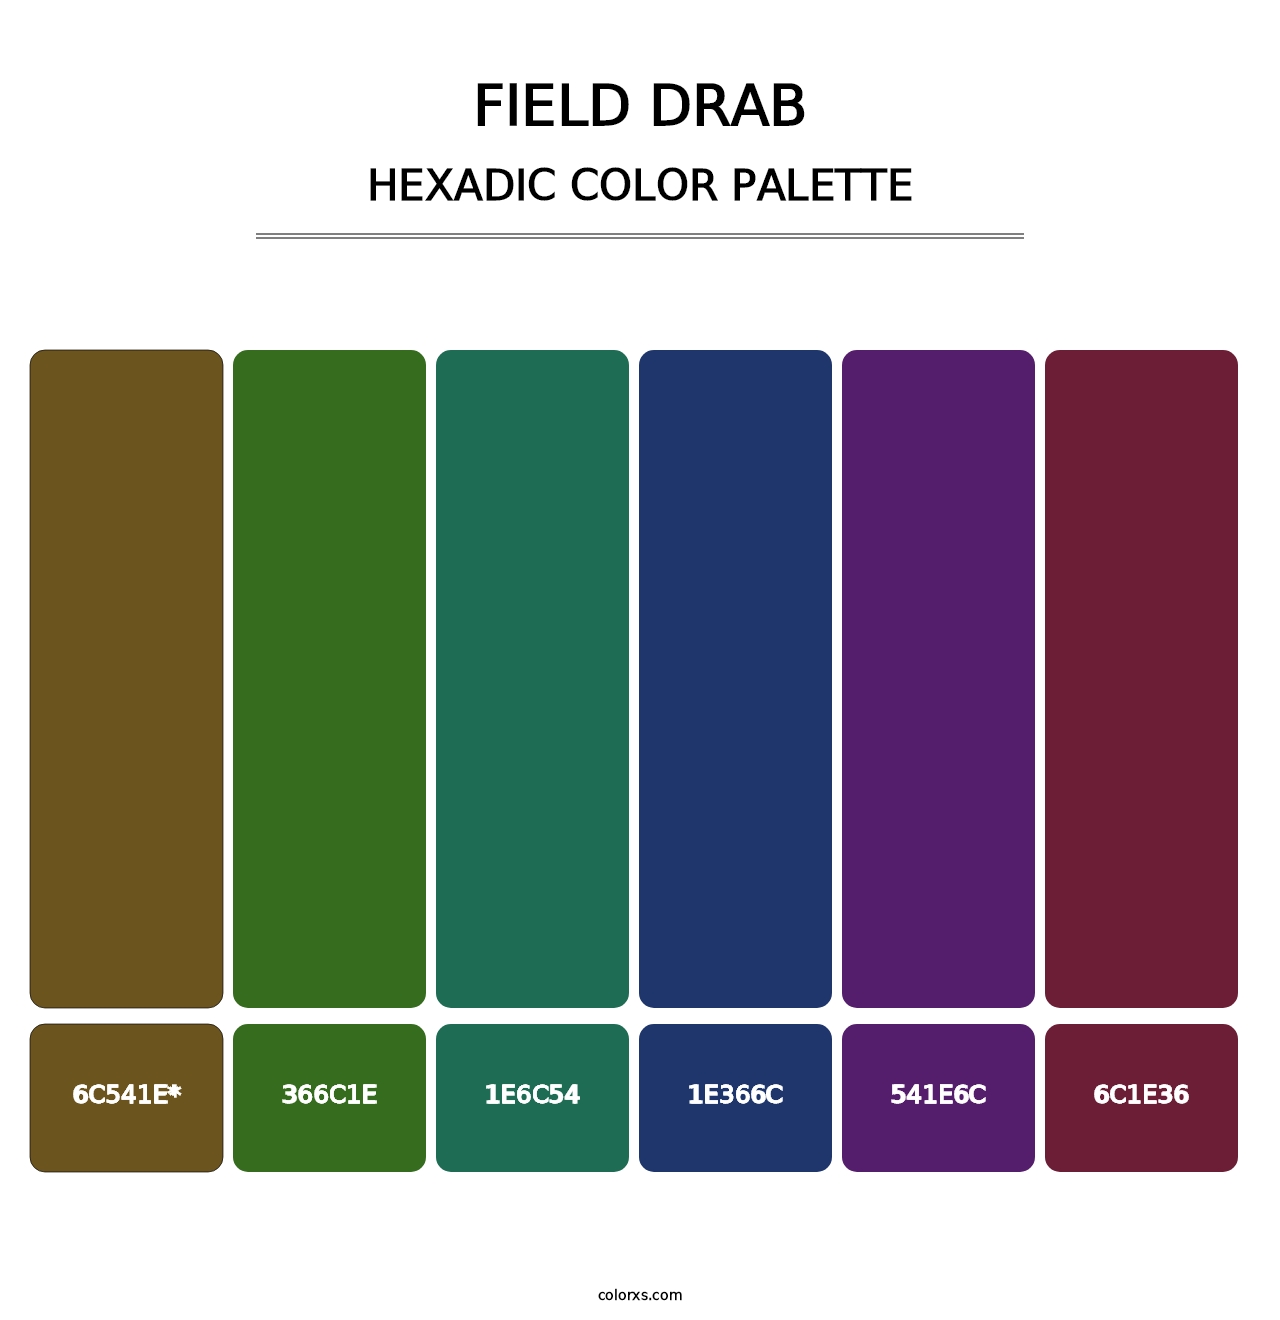 Field Drab - Hexadic Color Palette